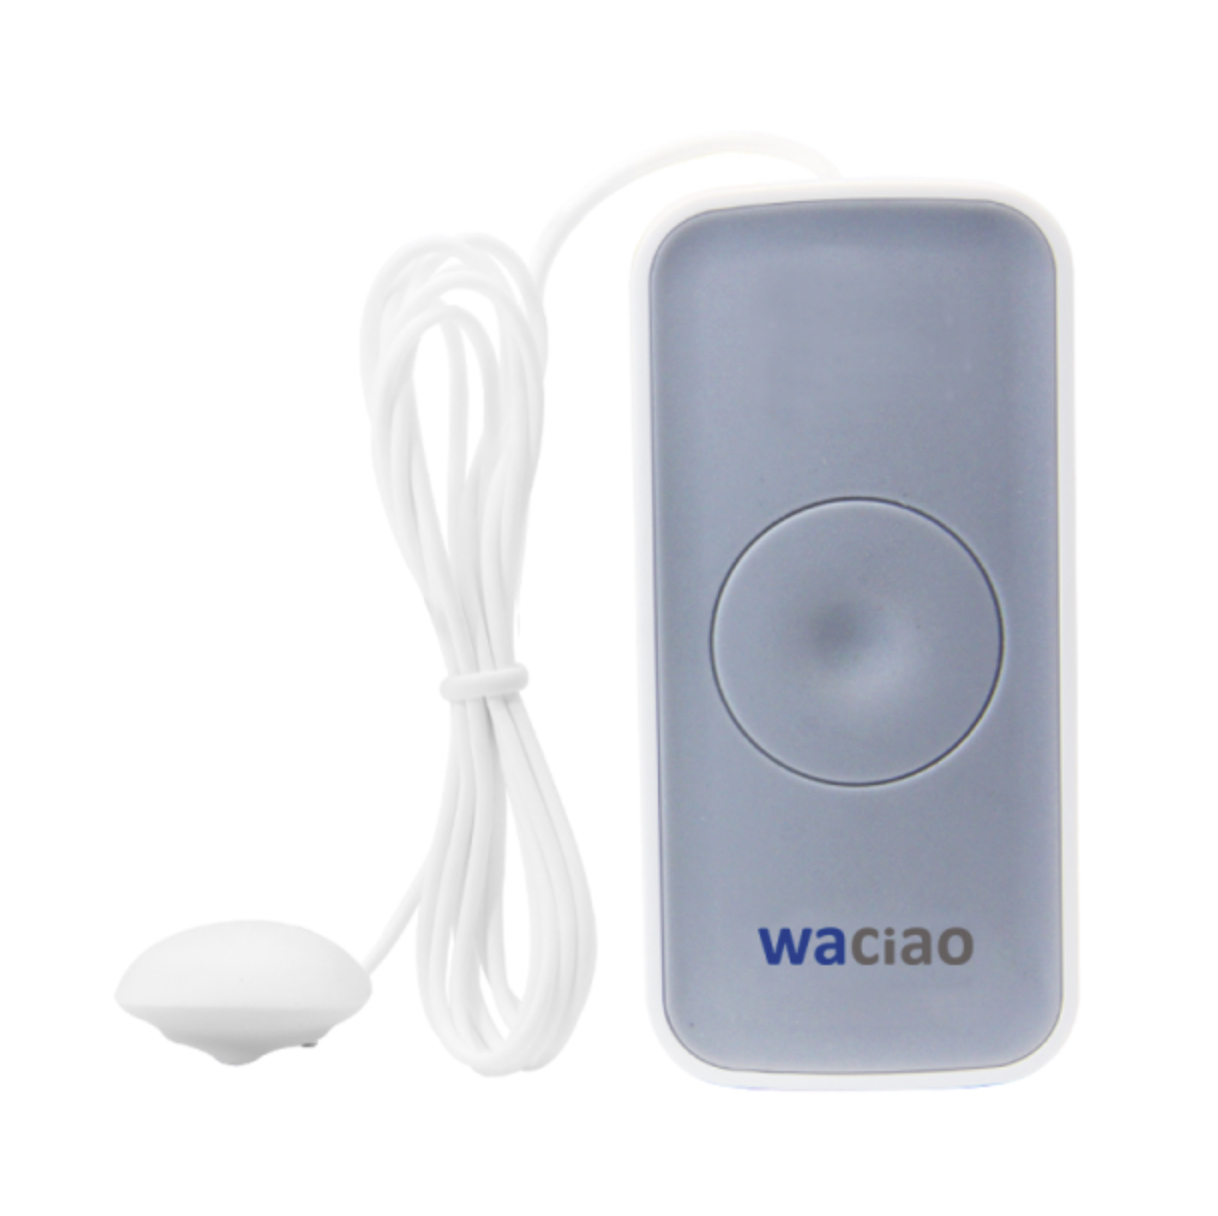 Waciao Smart Water Leakage Sensor